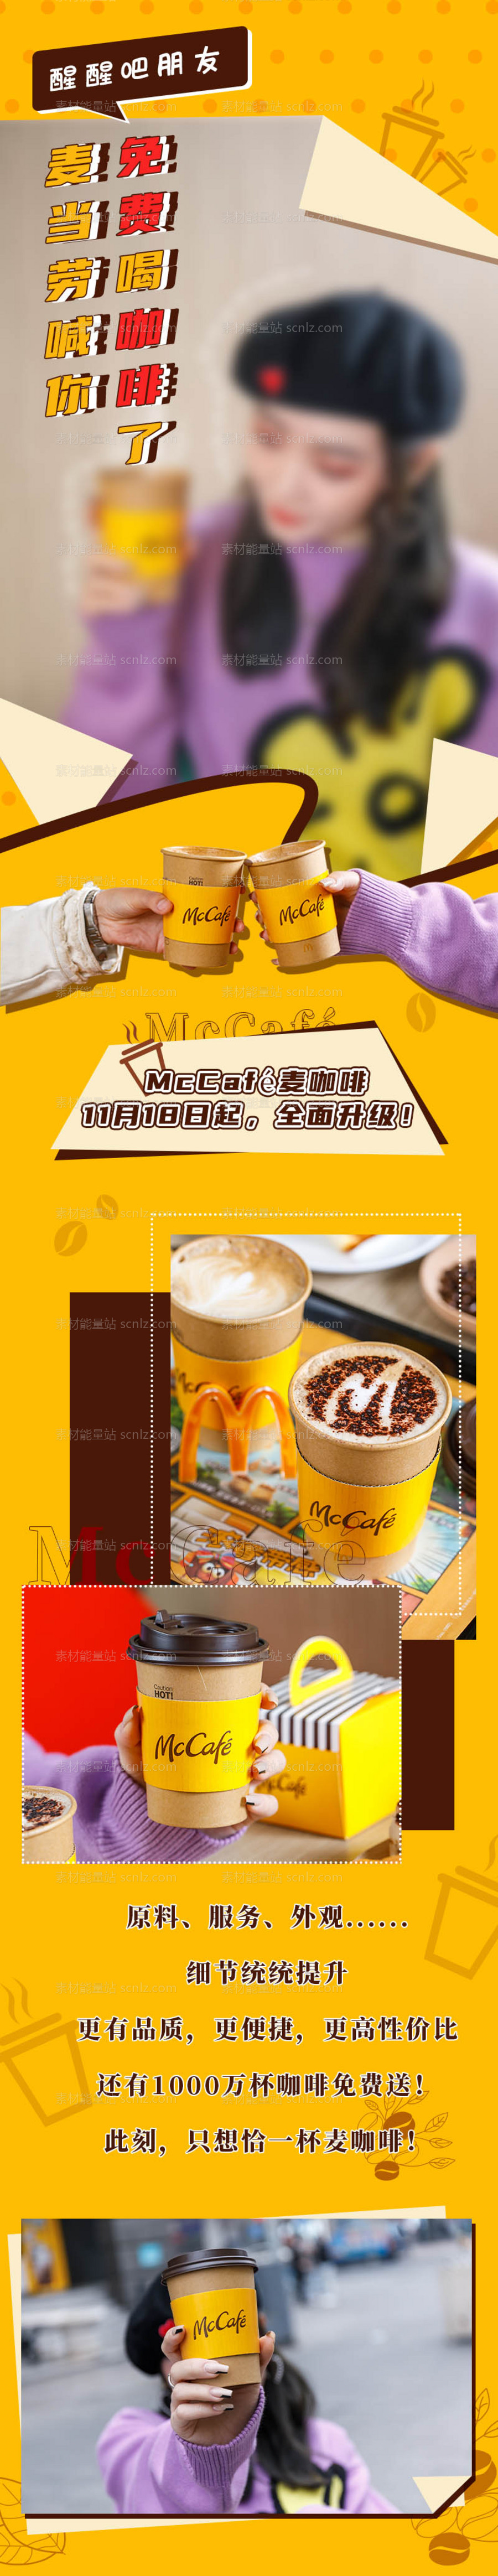 素材能量站-麦当劳新品咖啡创意长图